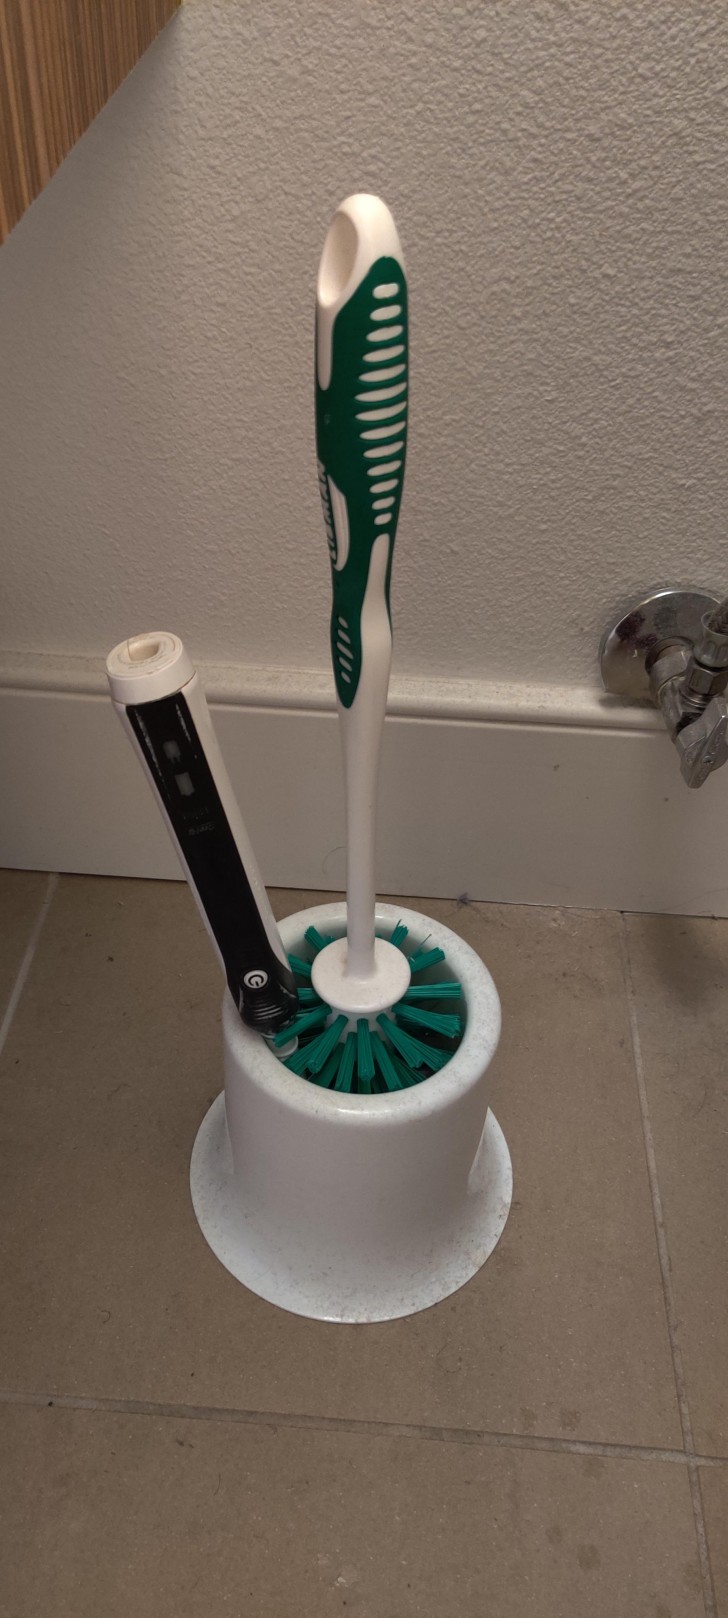 Ah, ecco dove era finito il mio spazzolino da denti...e adesso mi toccherà lavarlo accuratamente!